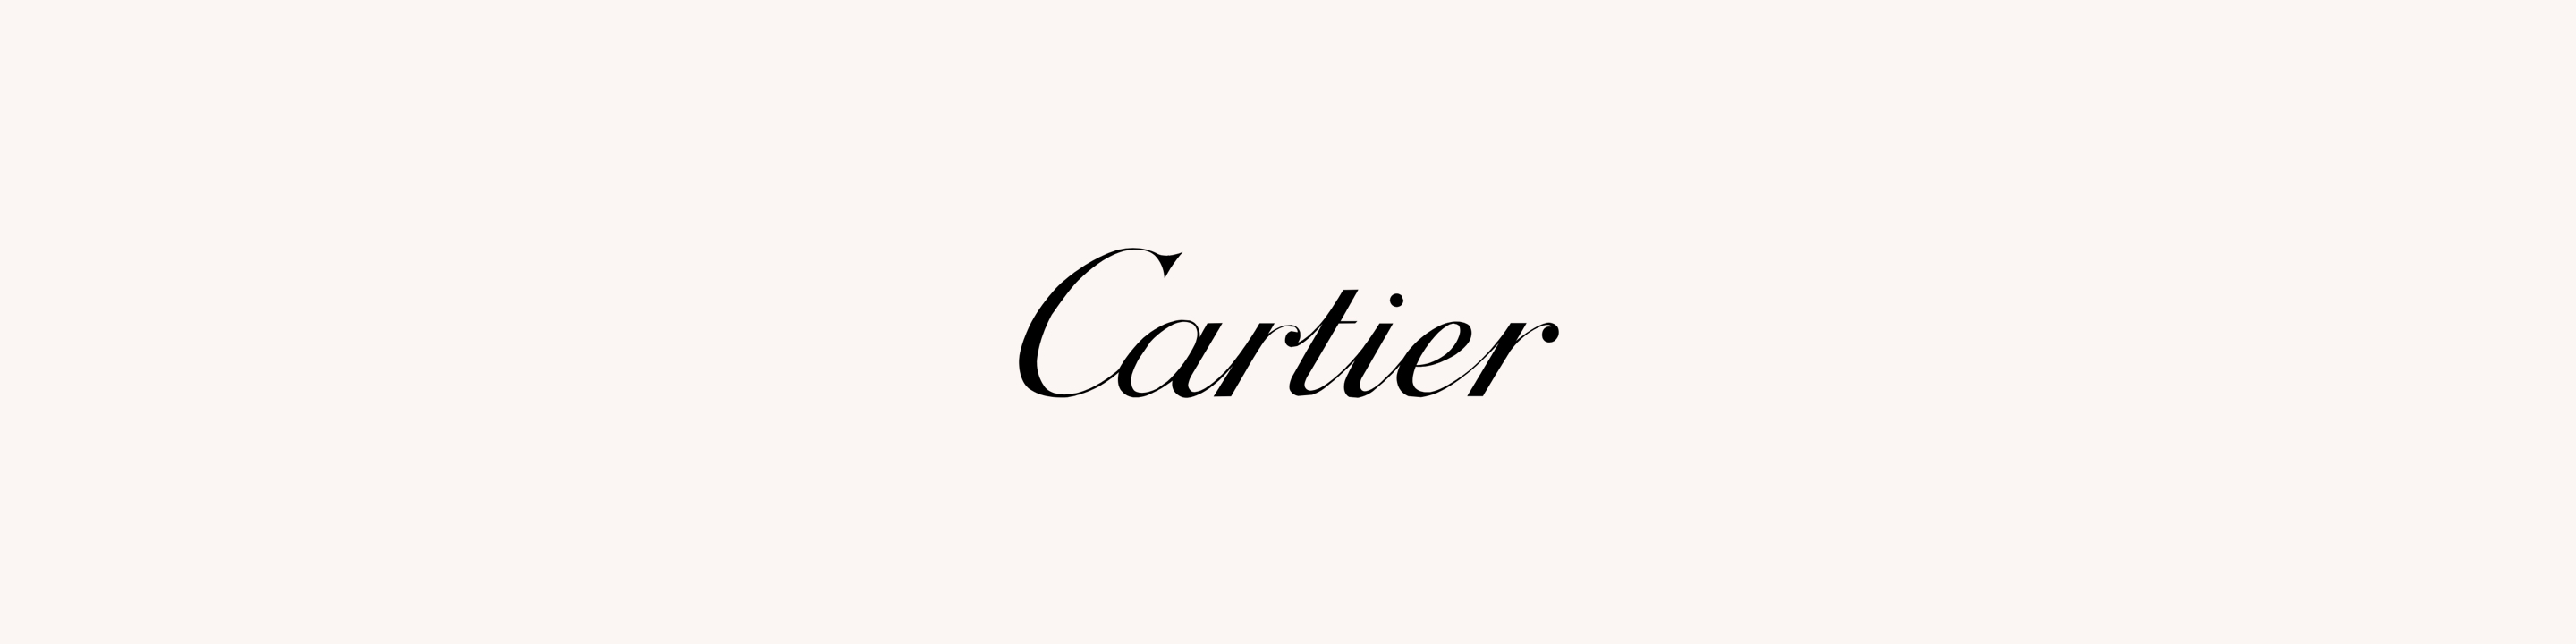 cartier glasses logo